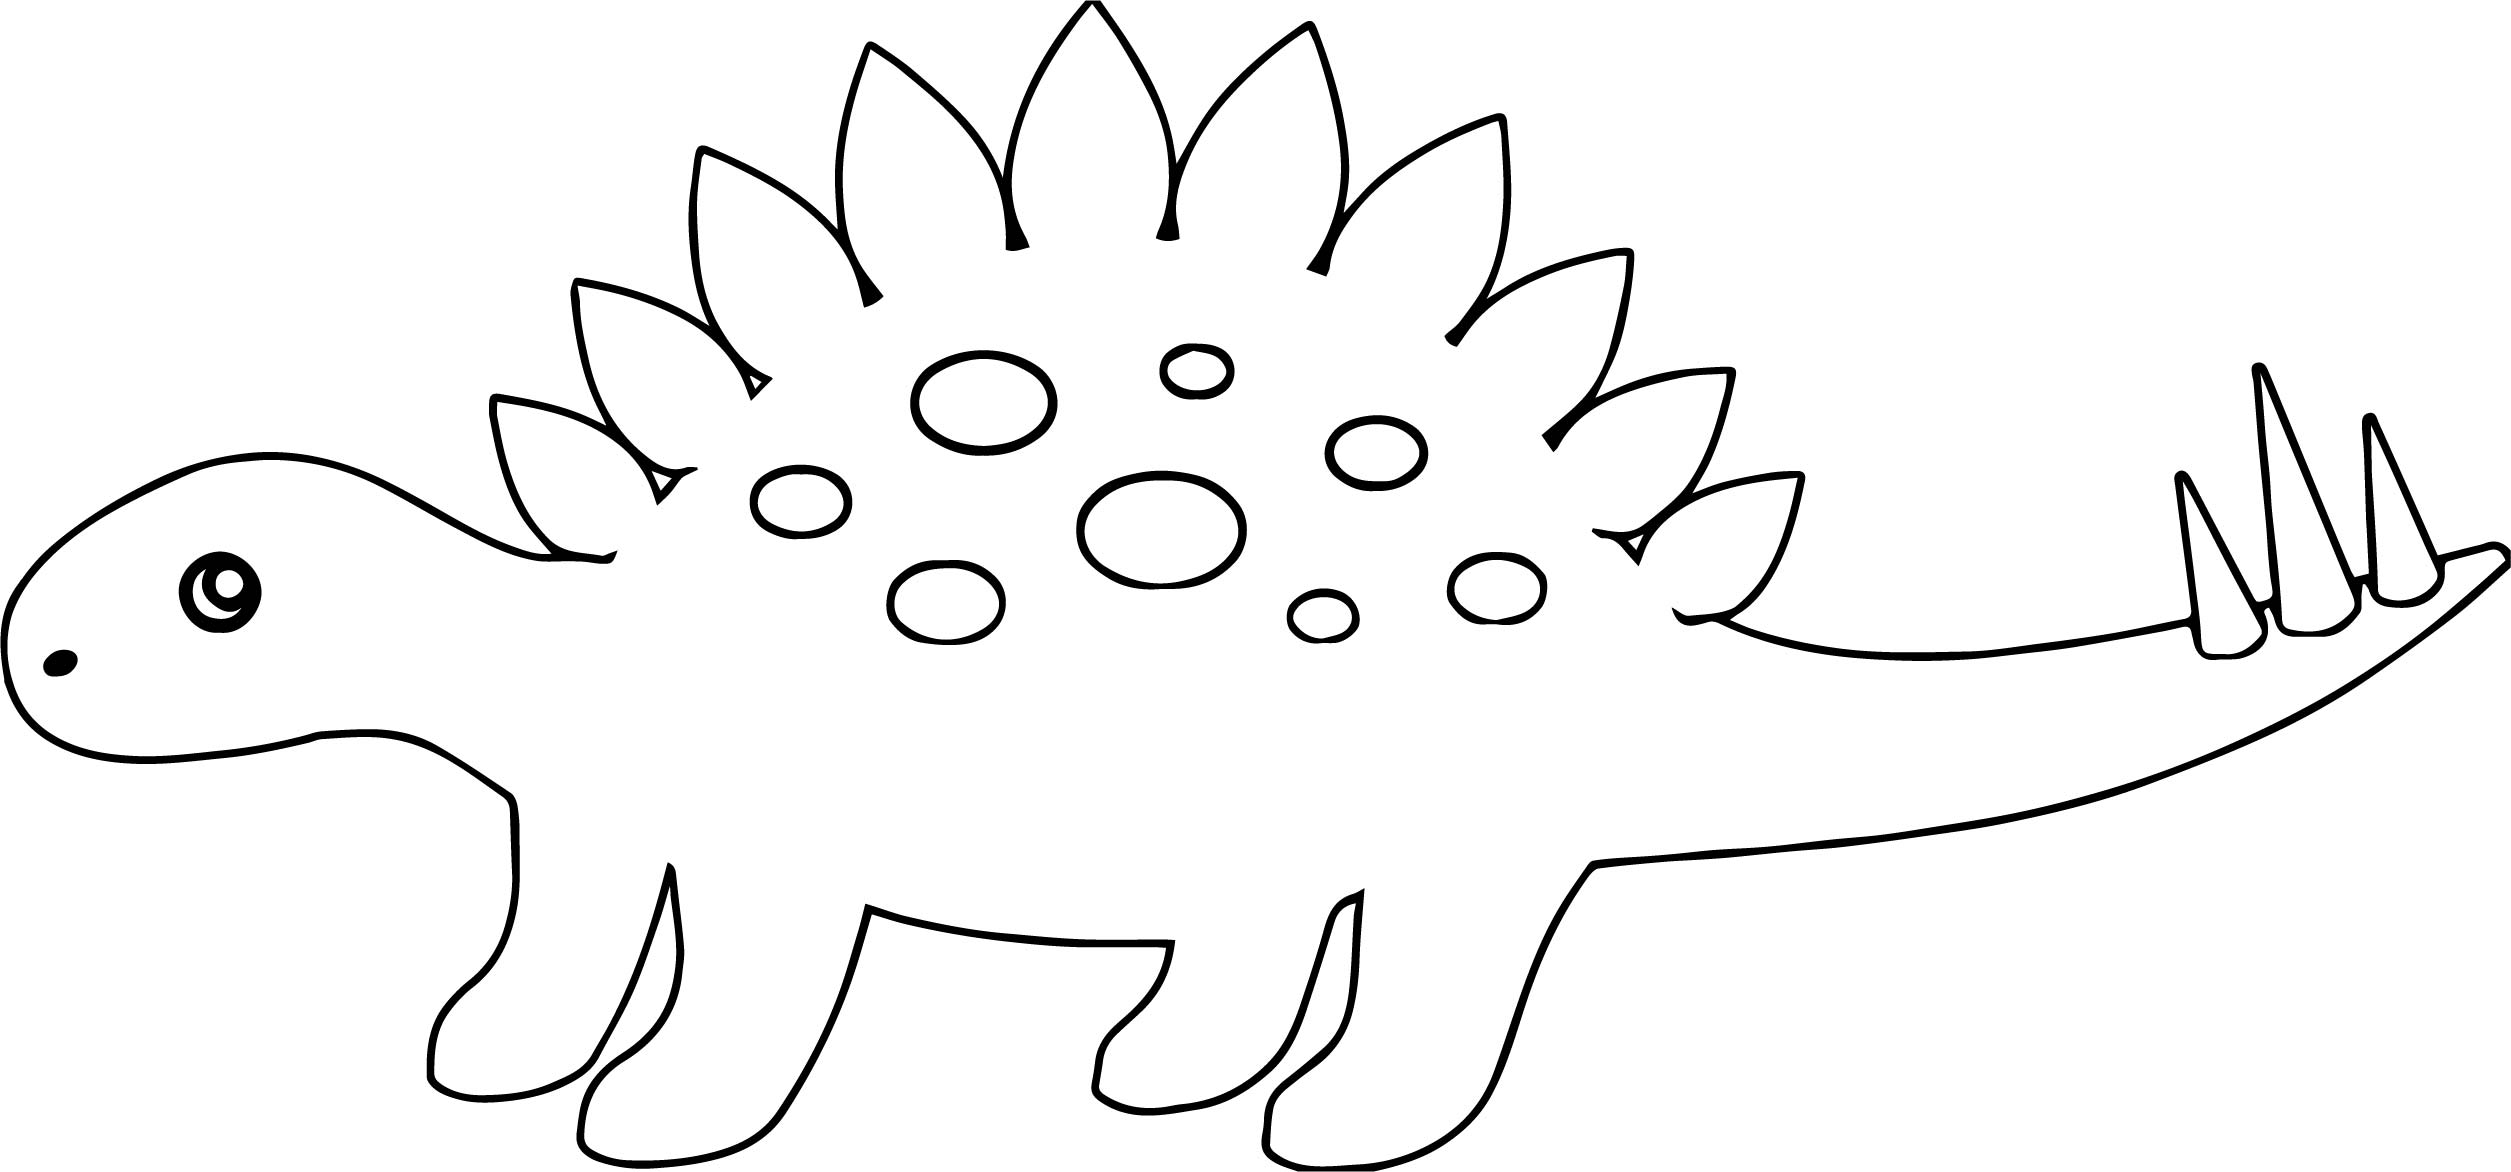 Раскраска динозавр Стегозавр